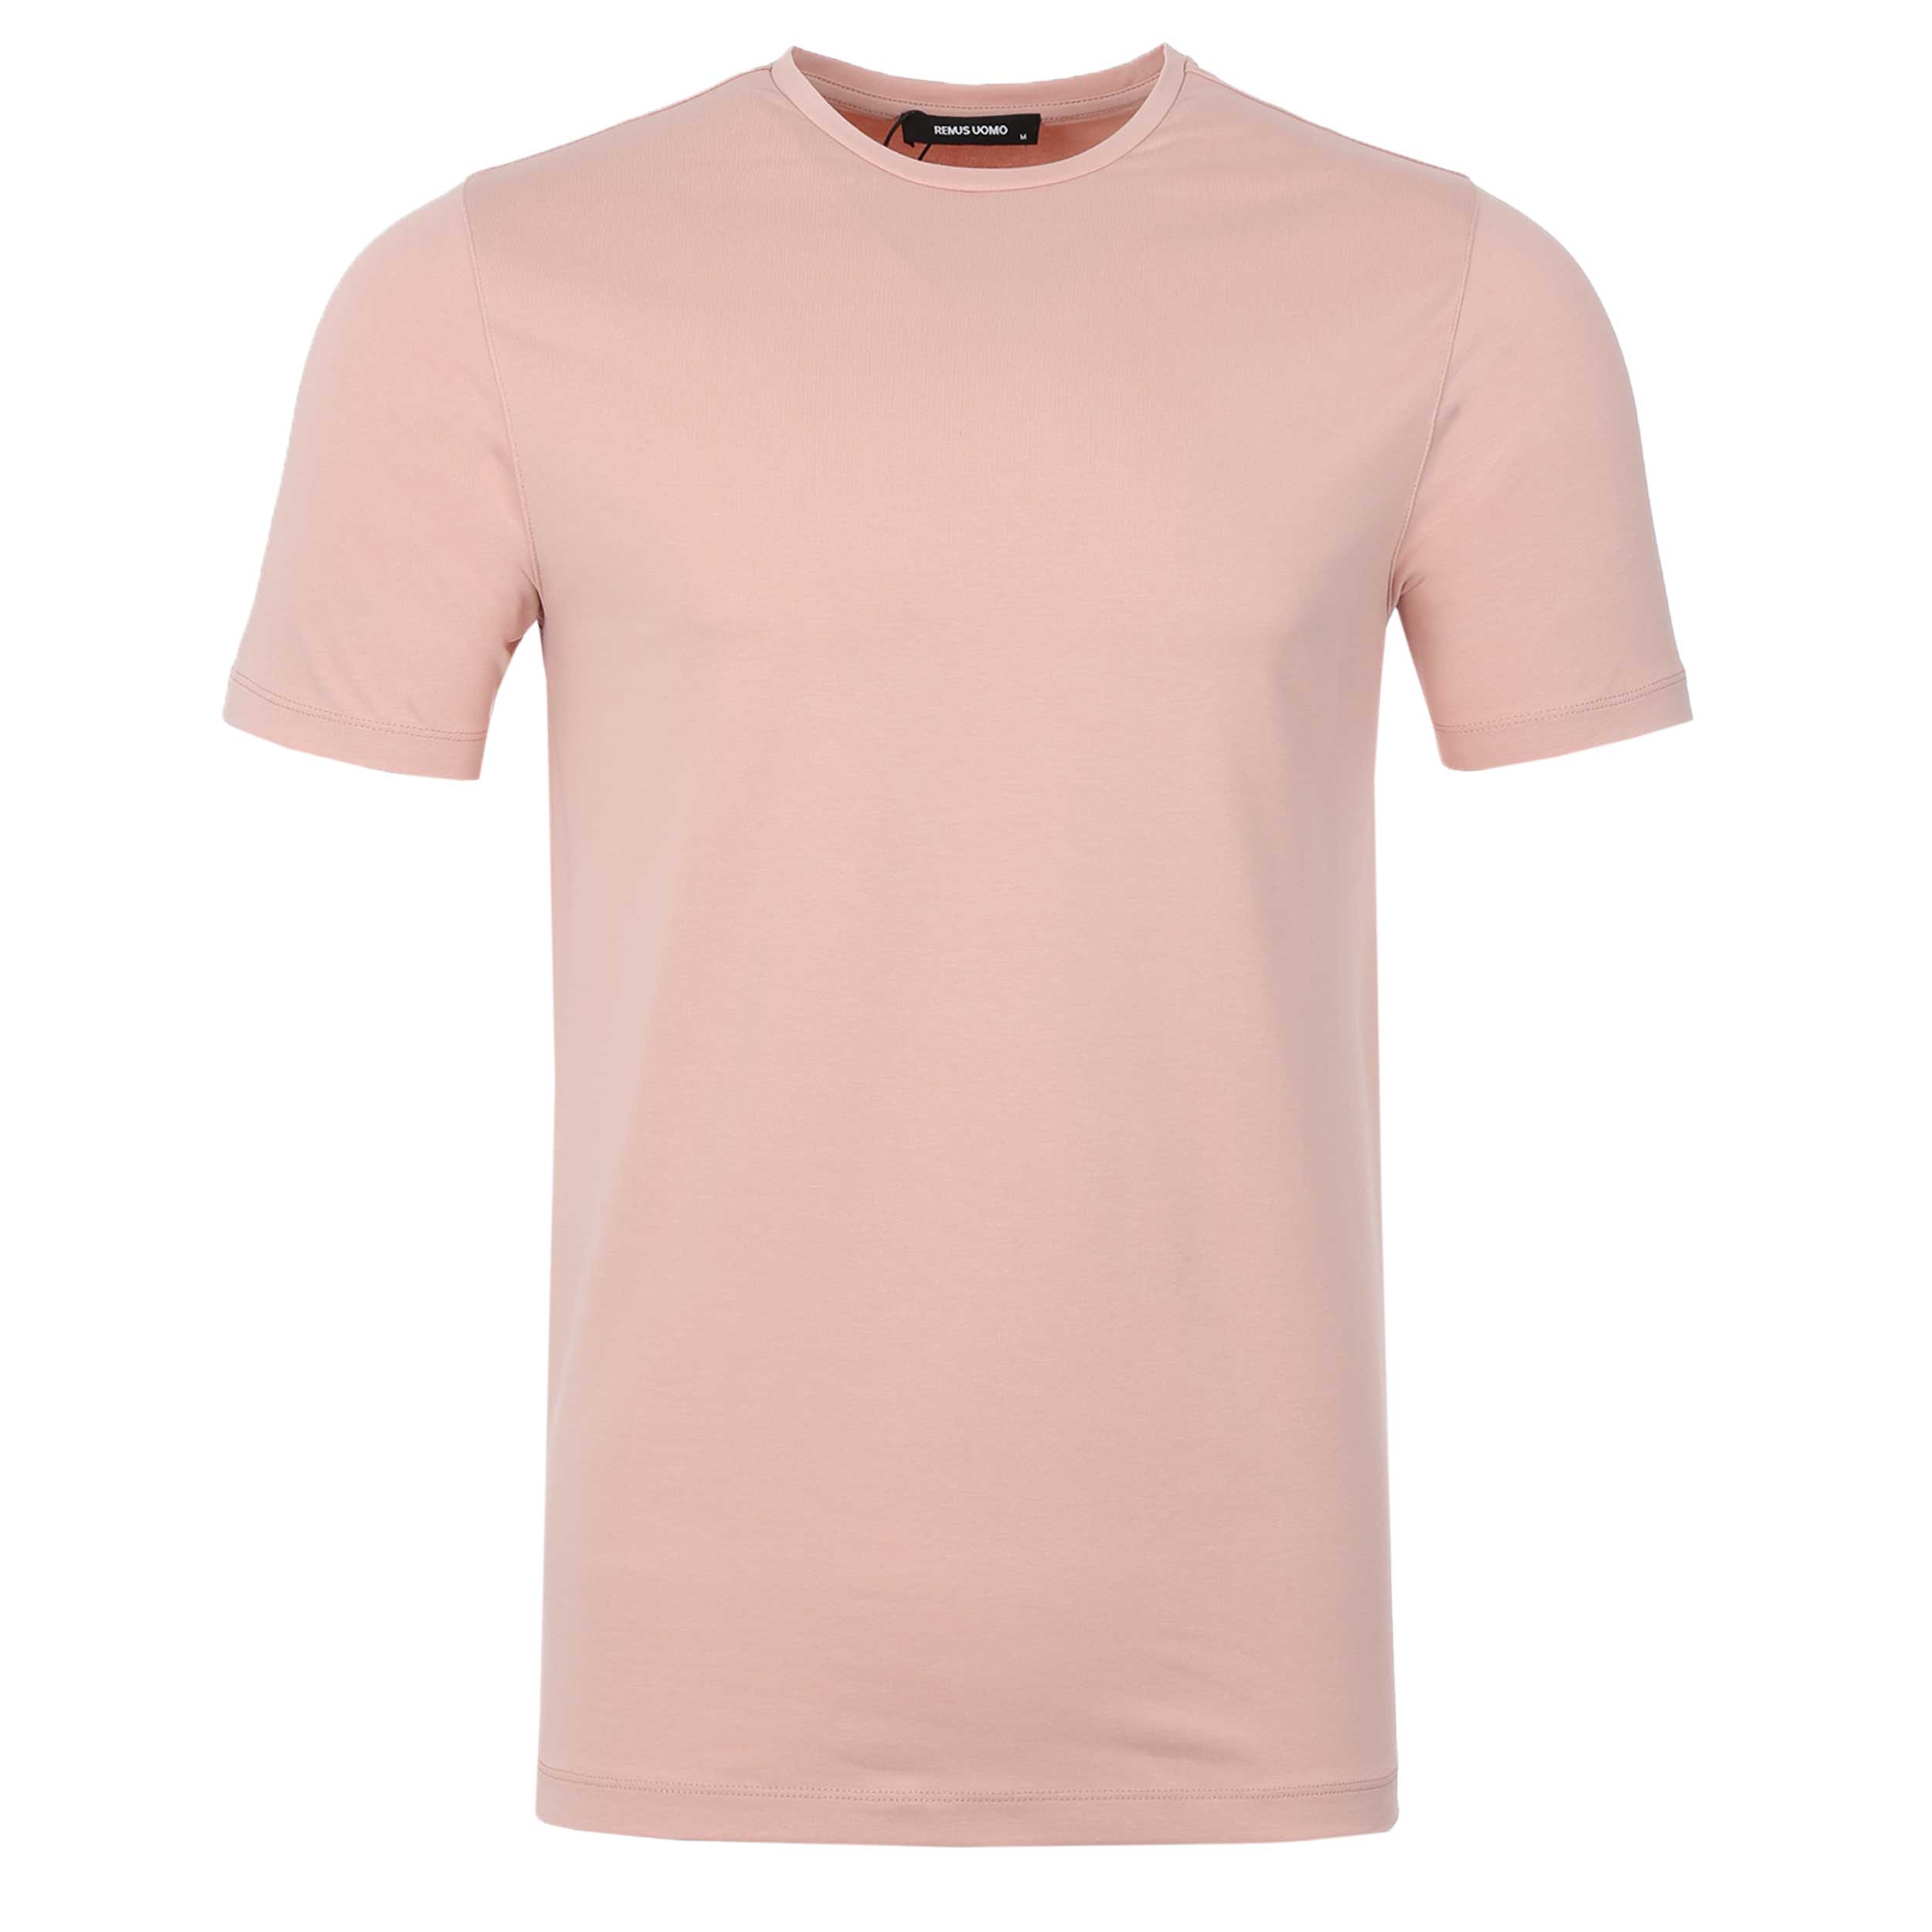 Remus Uomo Basic Crew Neck T Shirt in Pink